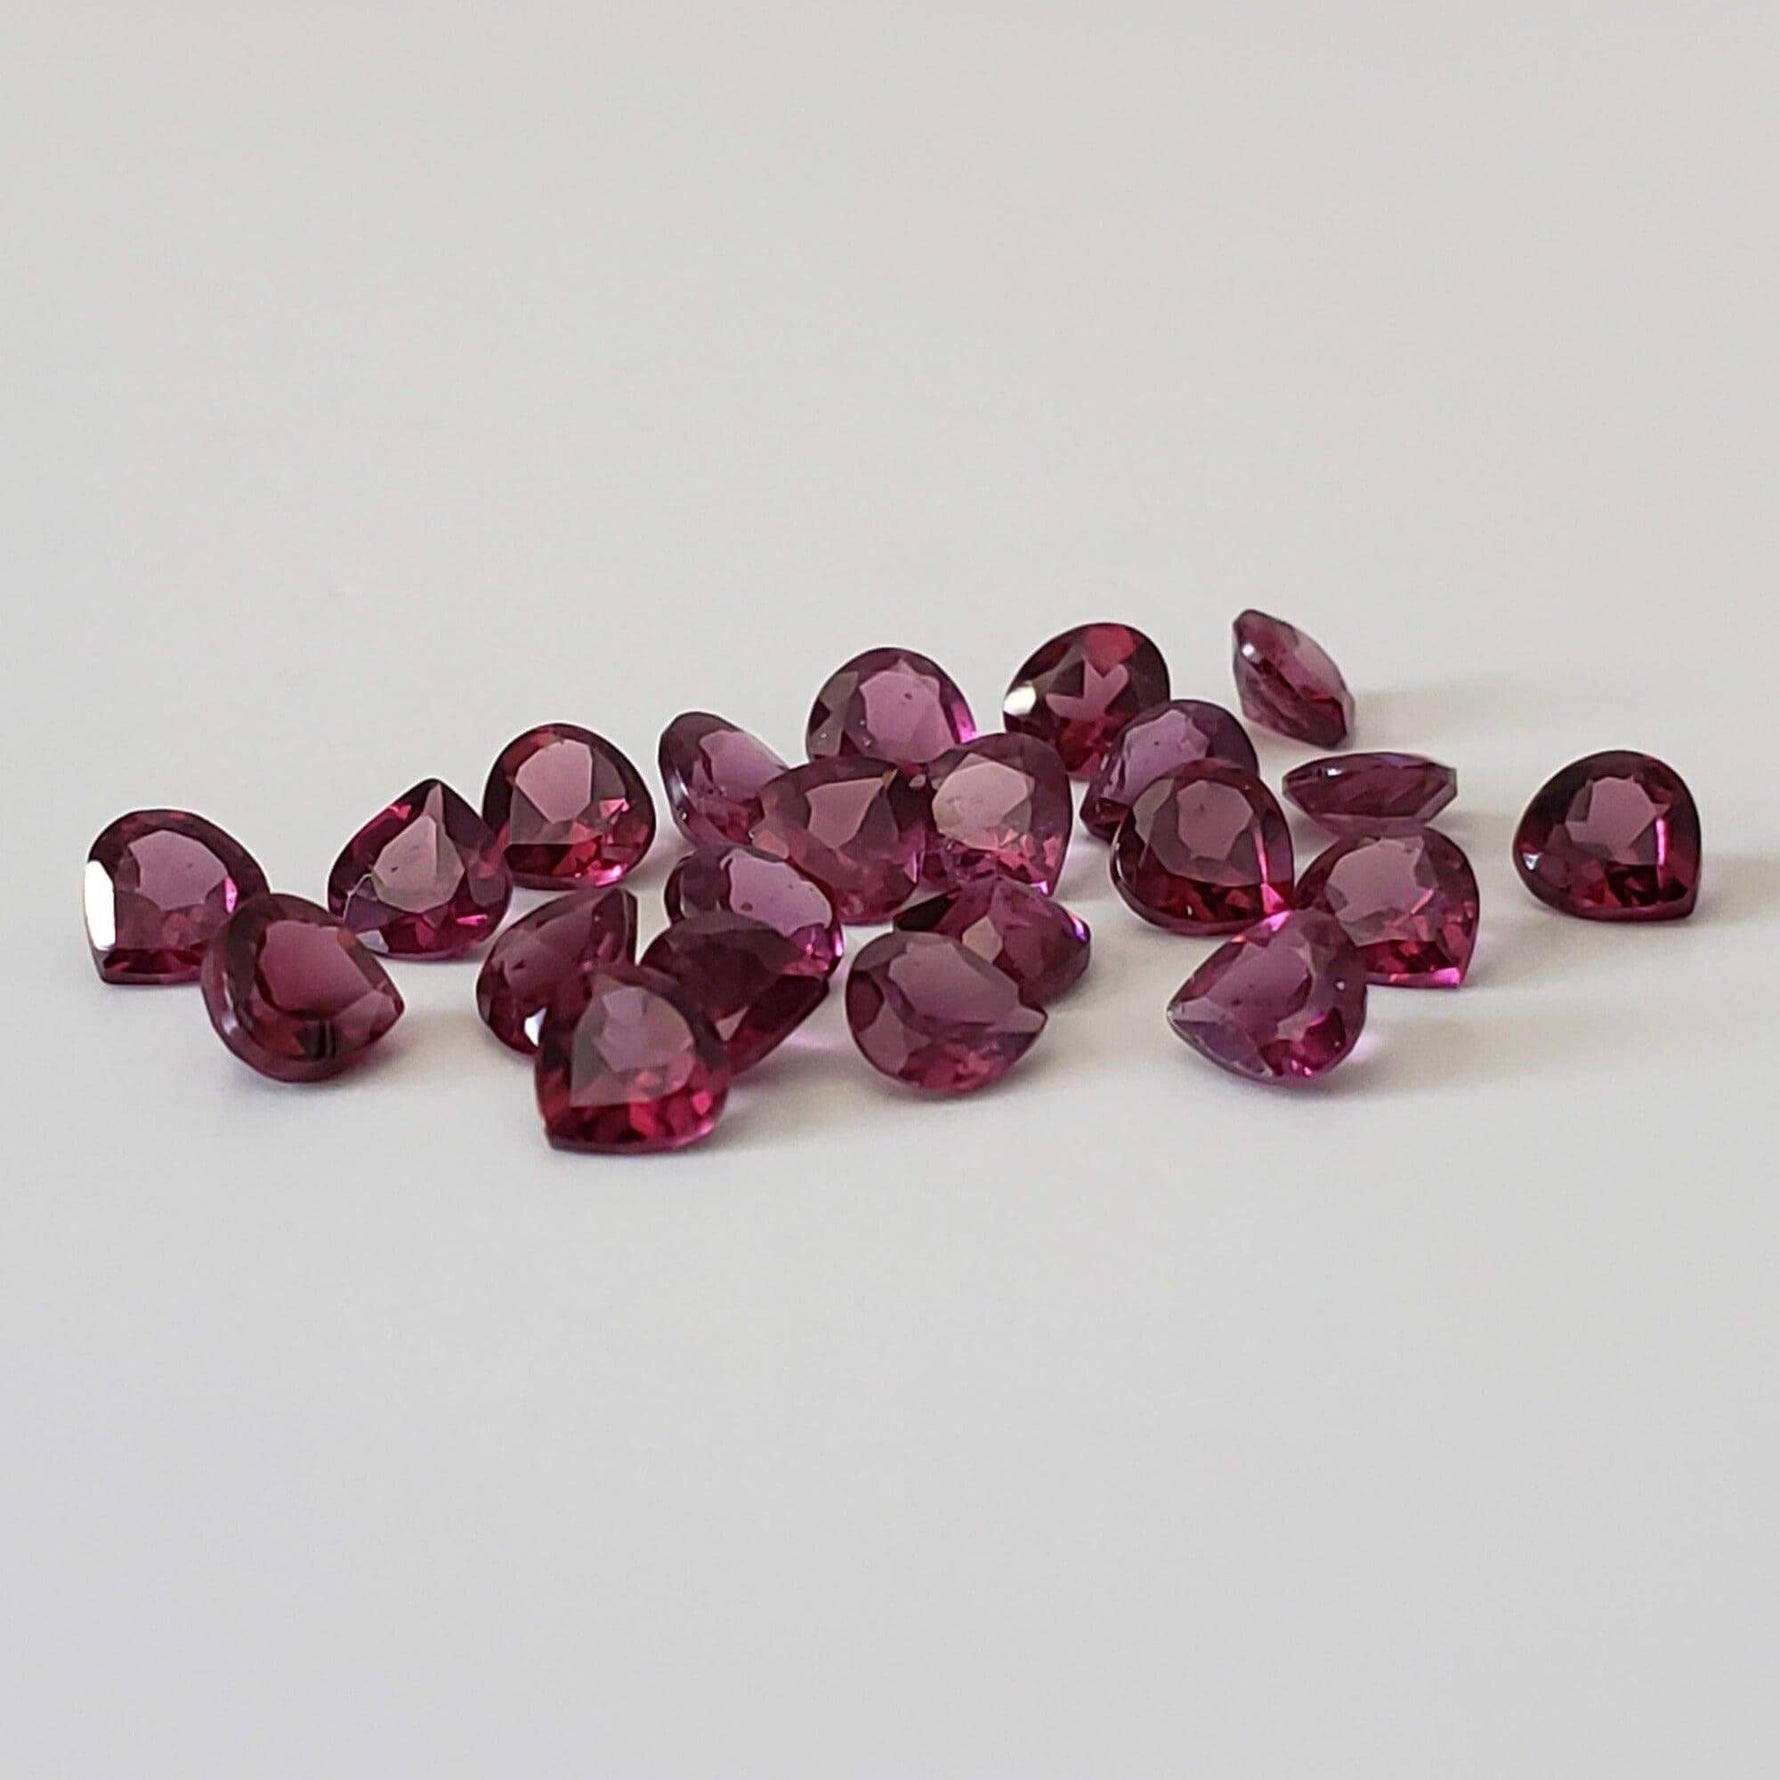 Rhodolite Garnet | Untreated Garnet | Pear Shape Cut | Reddish Purple | 4mm